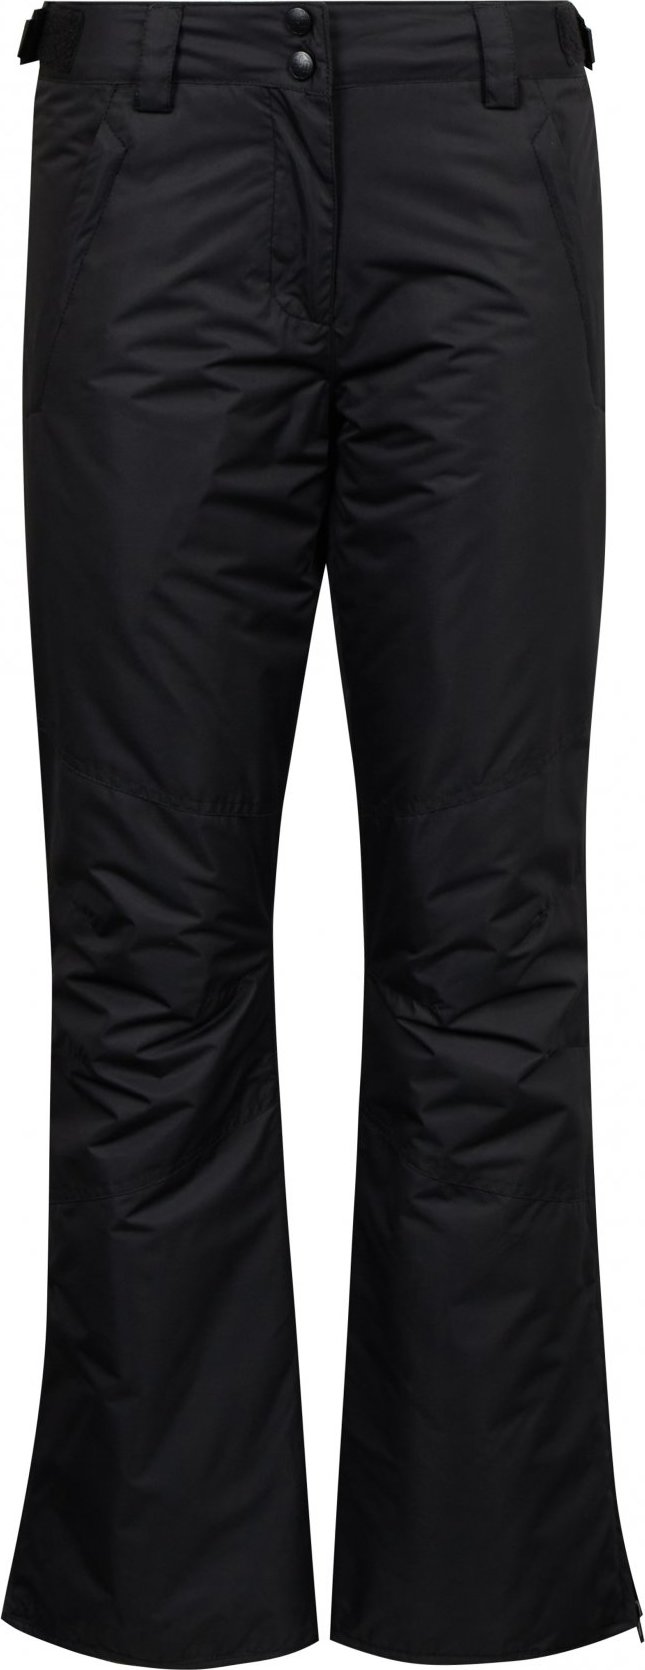 Dámské lyžařské kalhoty SAM 73 Indy černé Velikost: XL